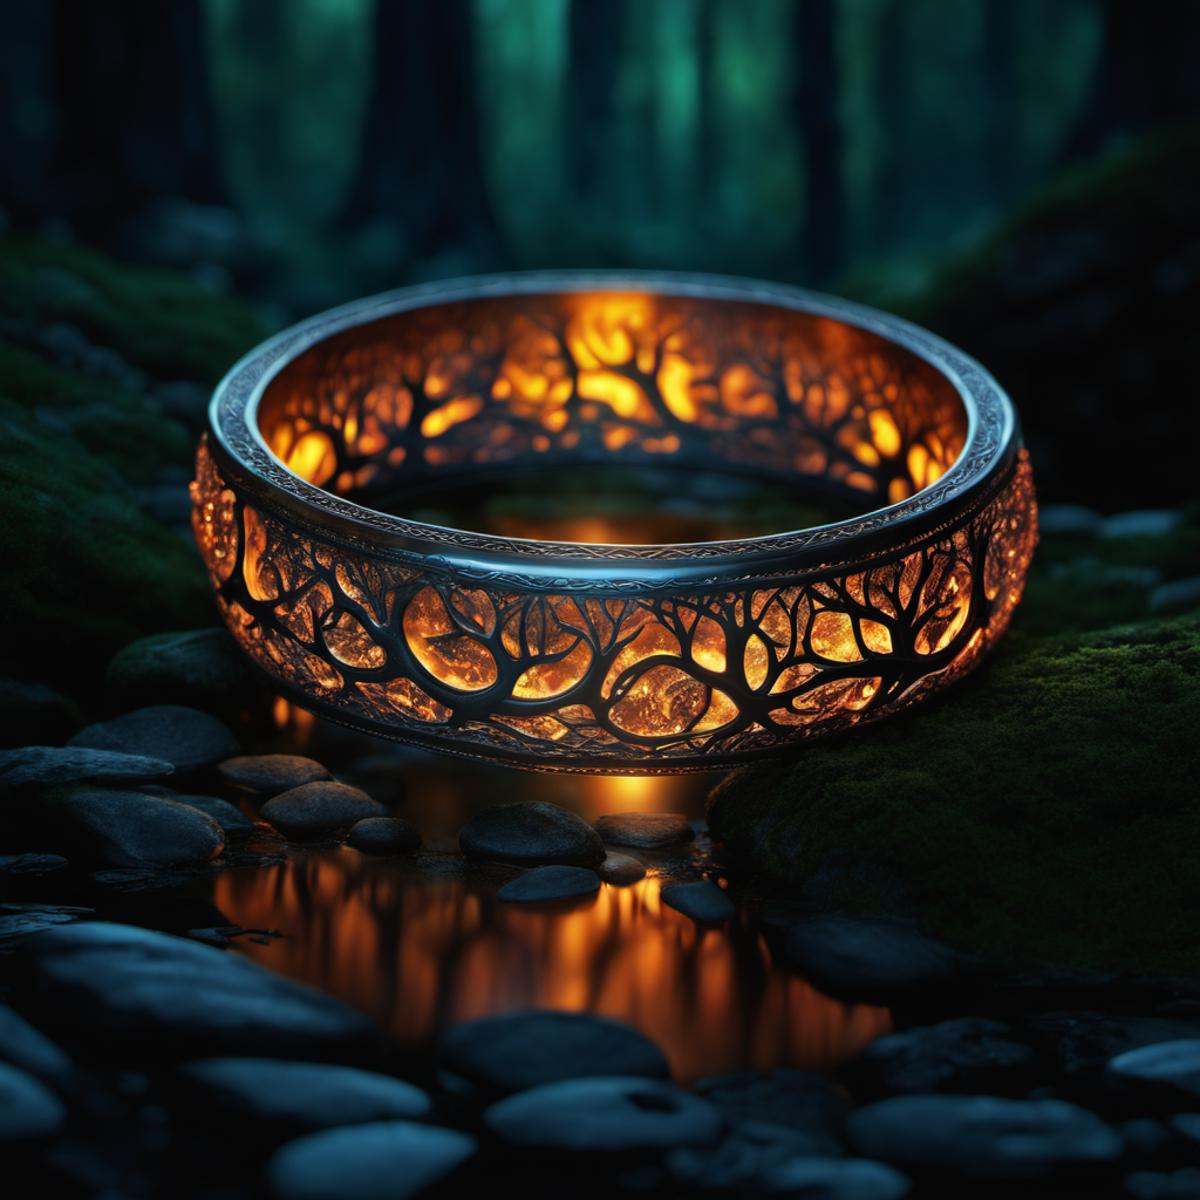 A ring with a tree design on it, on a rock in a forest.